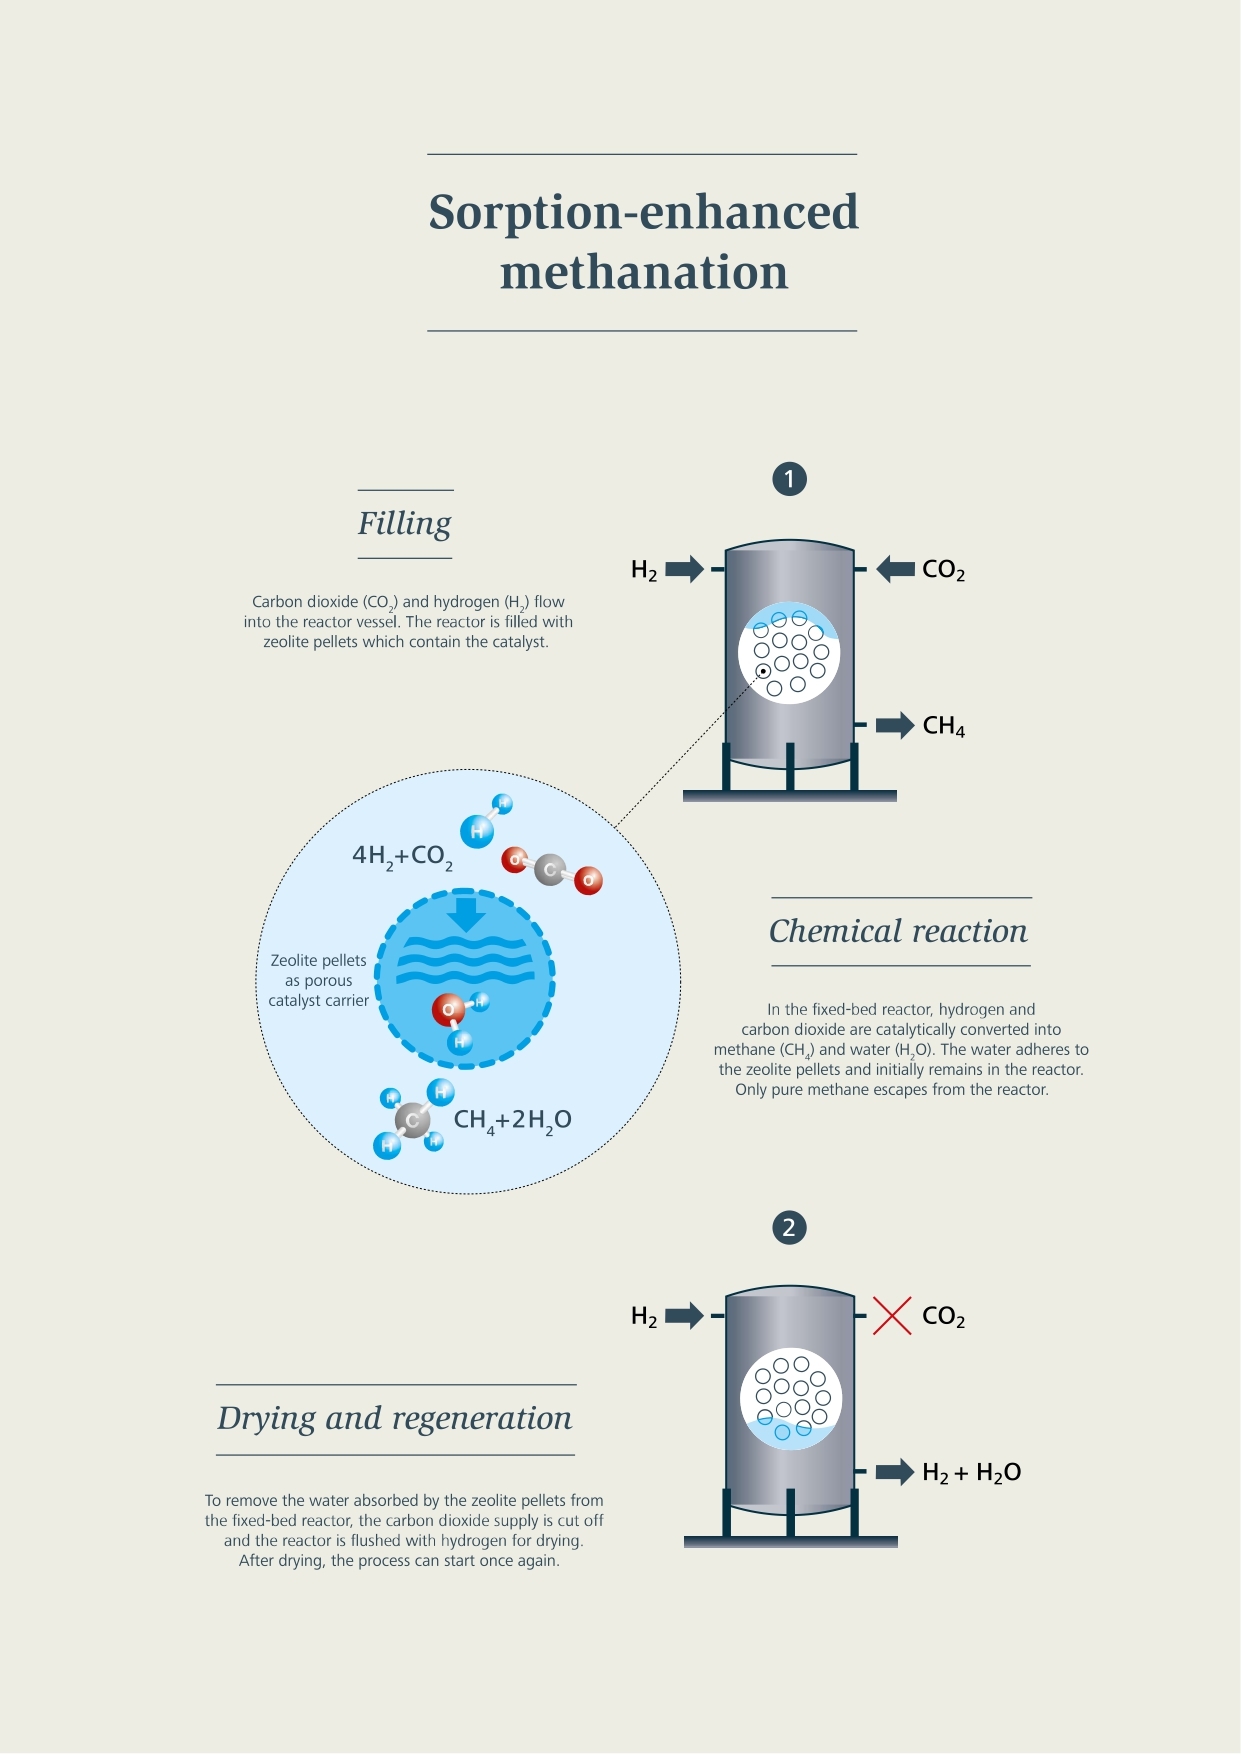 合成メタン：吸収を伴うメタン化のプロセス：充填、化学反応、乾燥、再生など